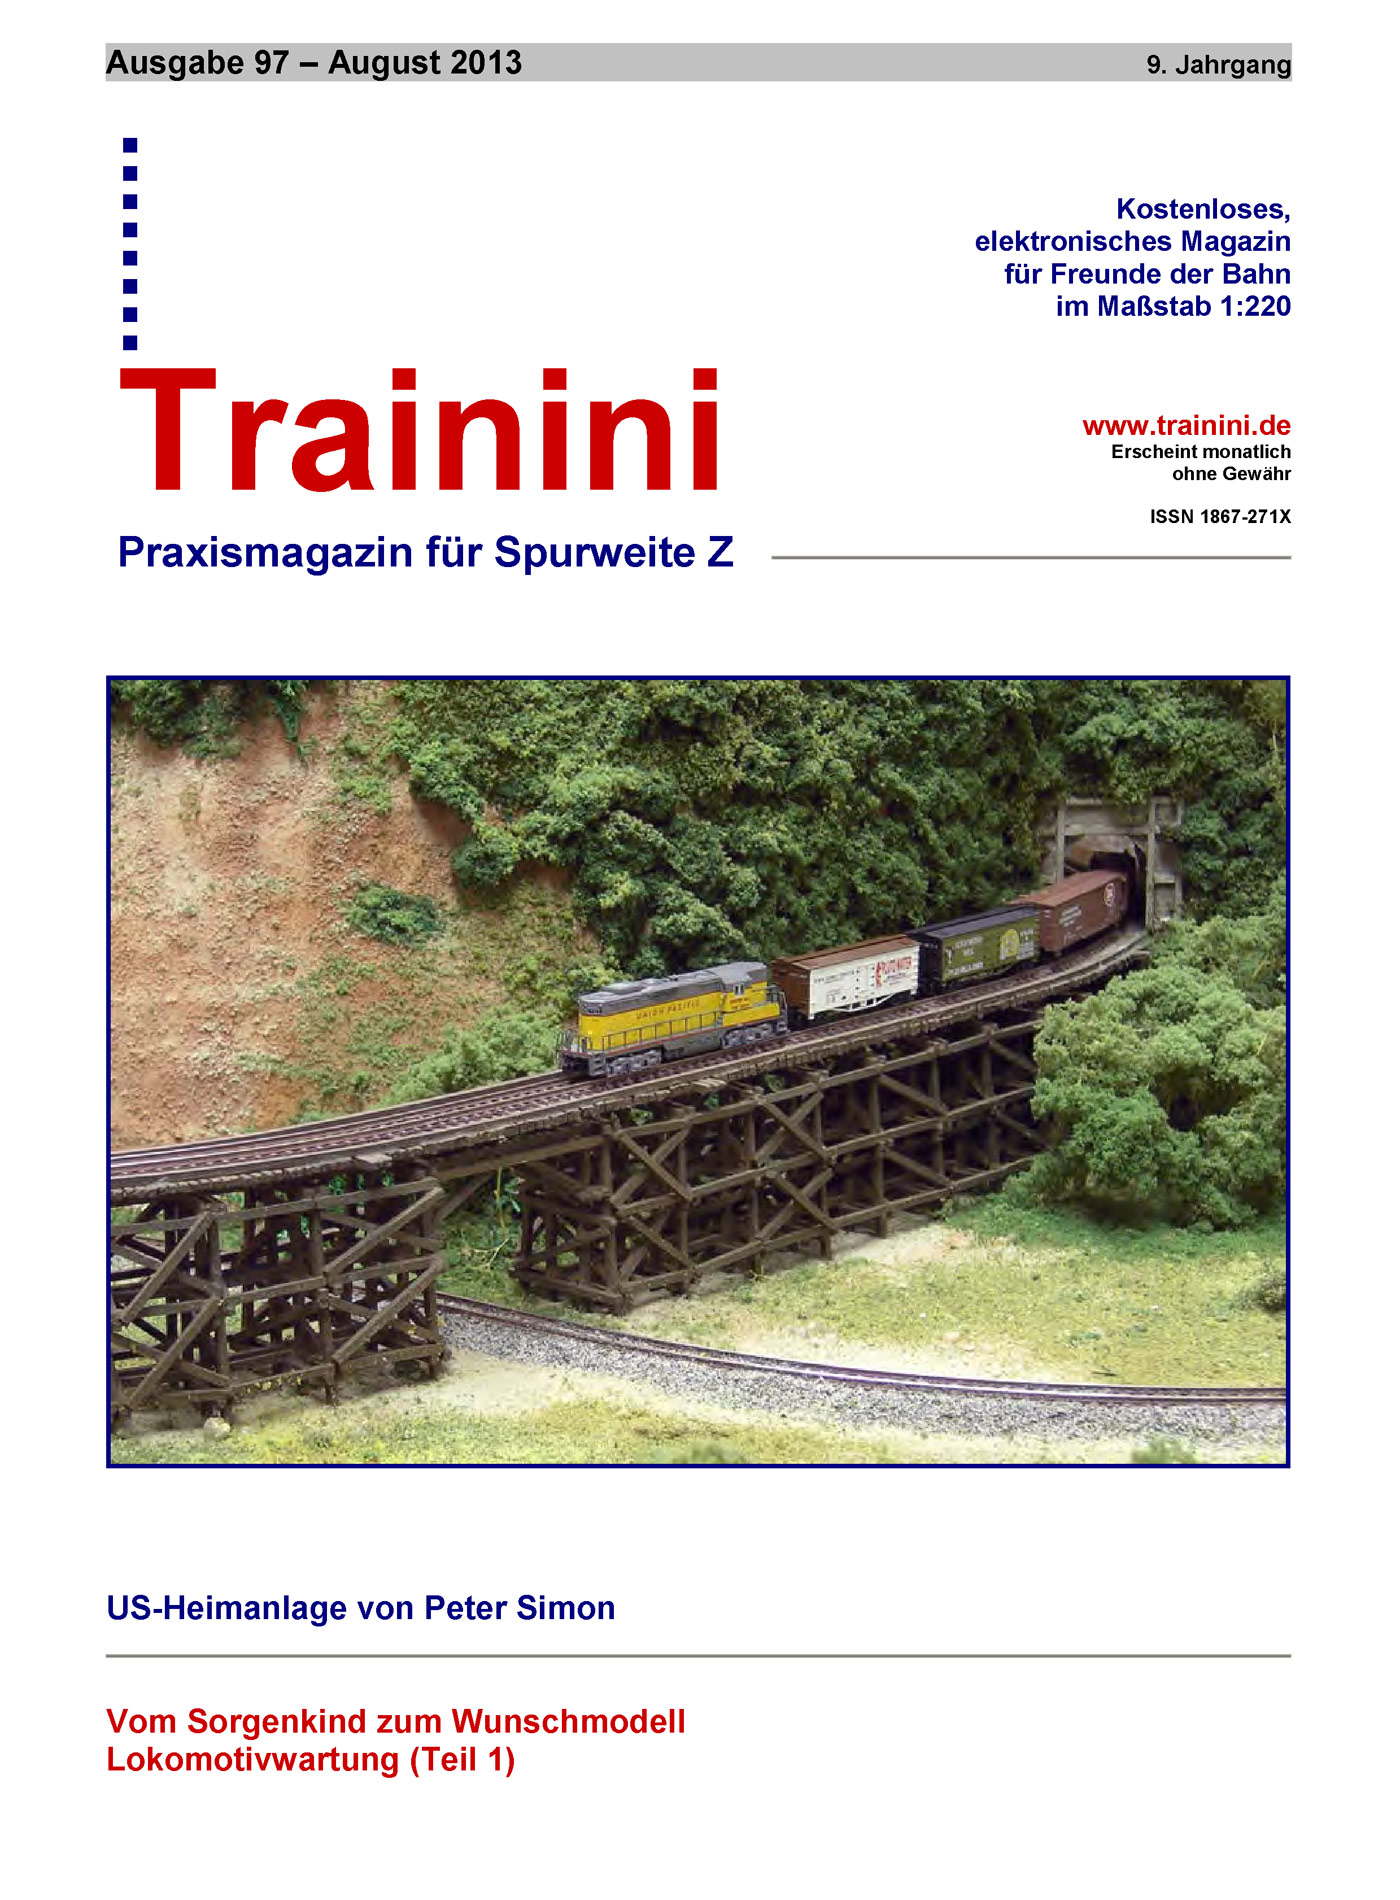 Trainini Ausgabe August 2013